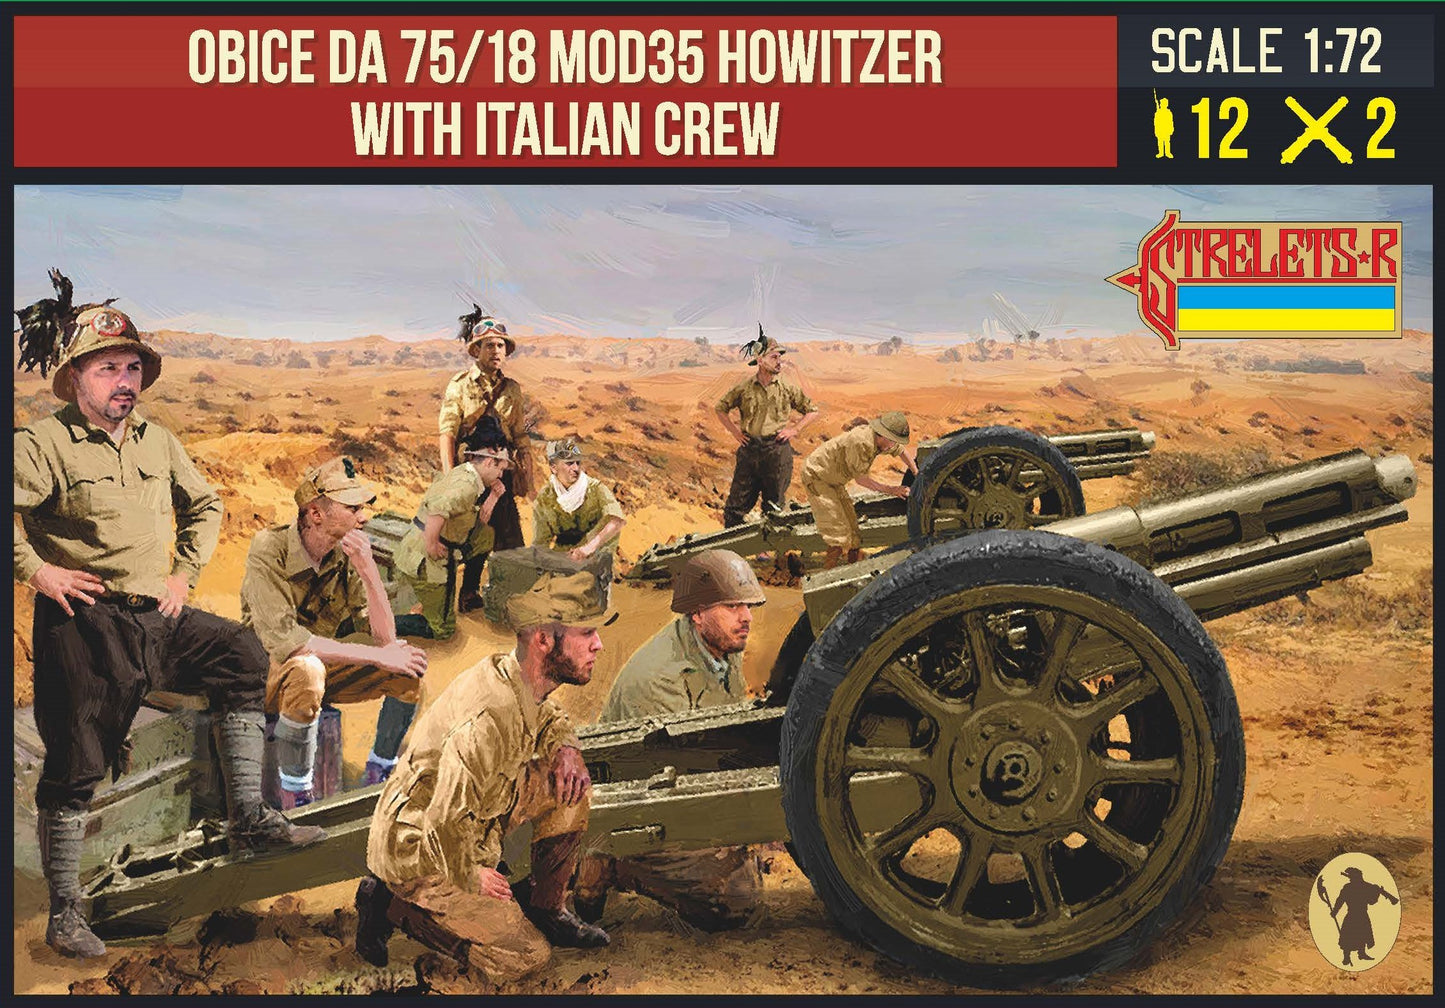 0282 STRELETS Obice da 75/18 Mod35 Howitzer & Italian Crew282 1/72